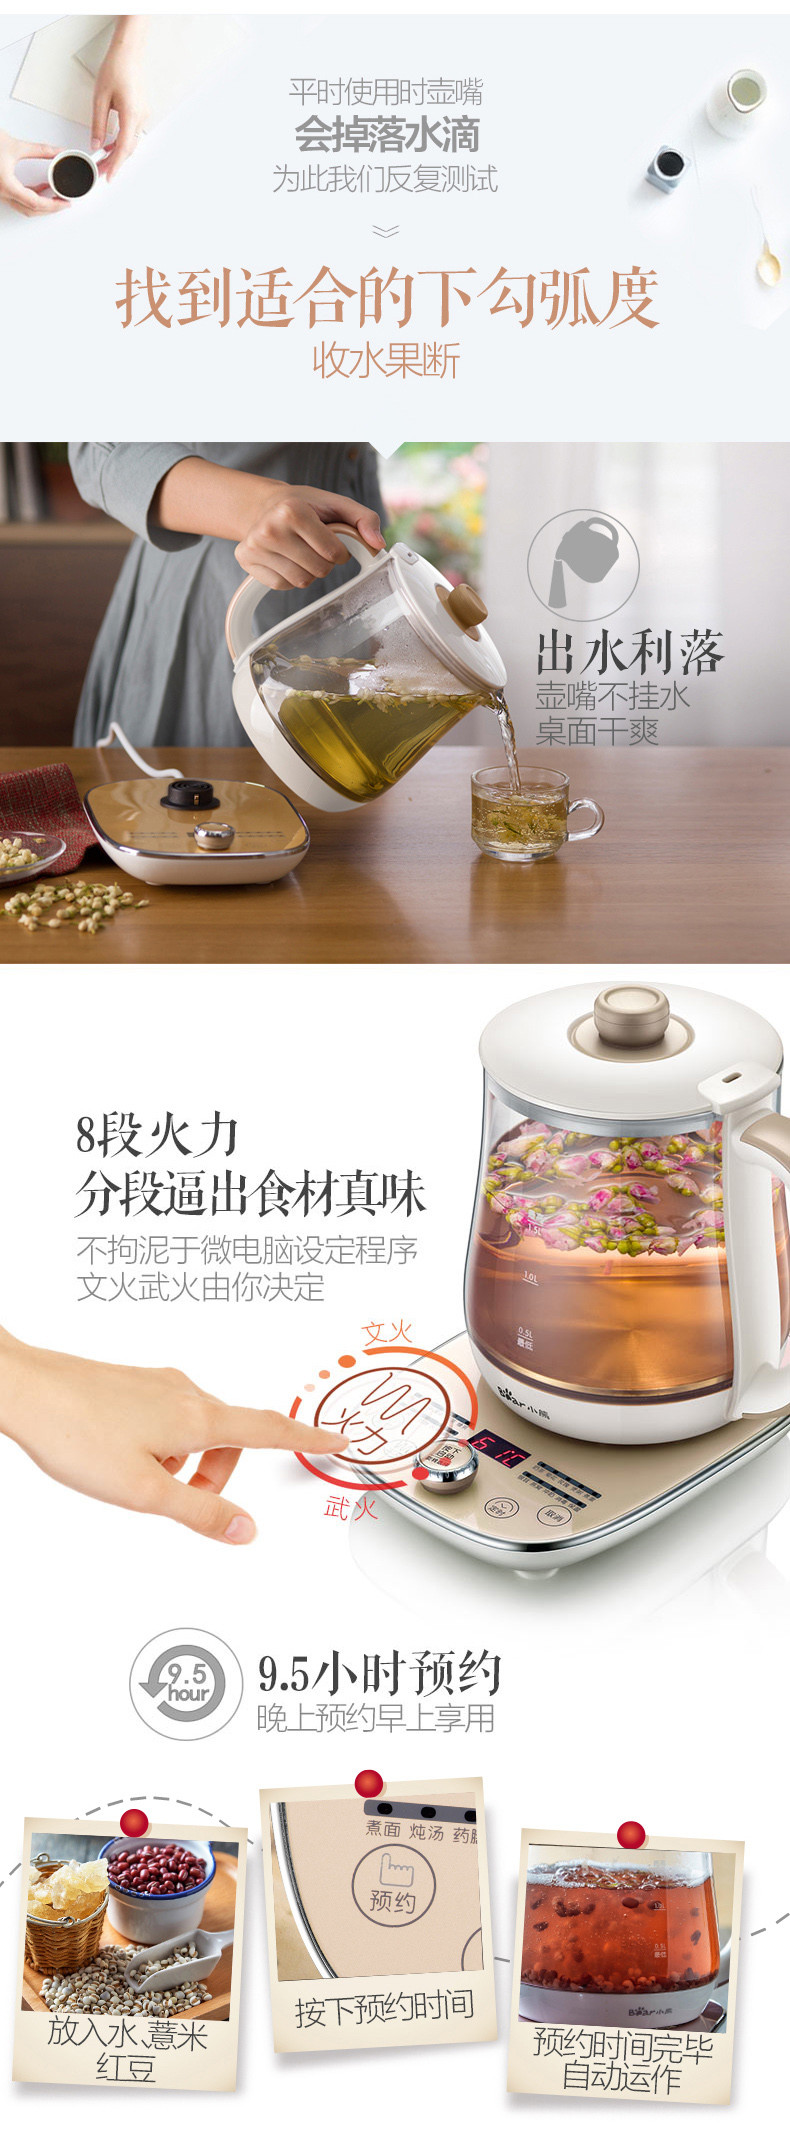 Bear/小熊 YSH-A15N1养生壶加厚玻璃多功能电热烧水壶煮茶器